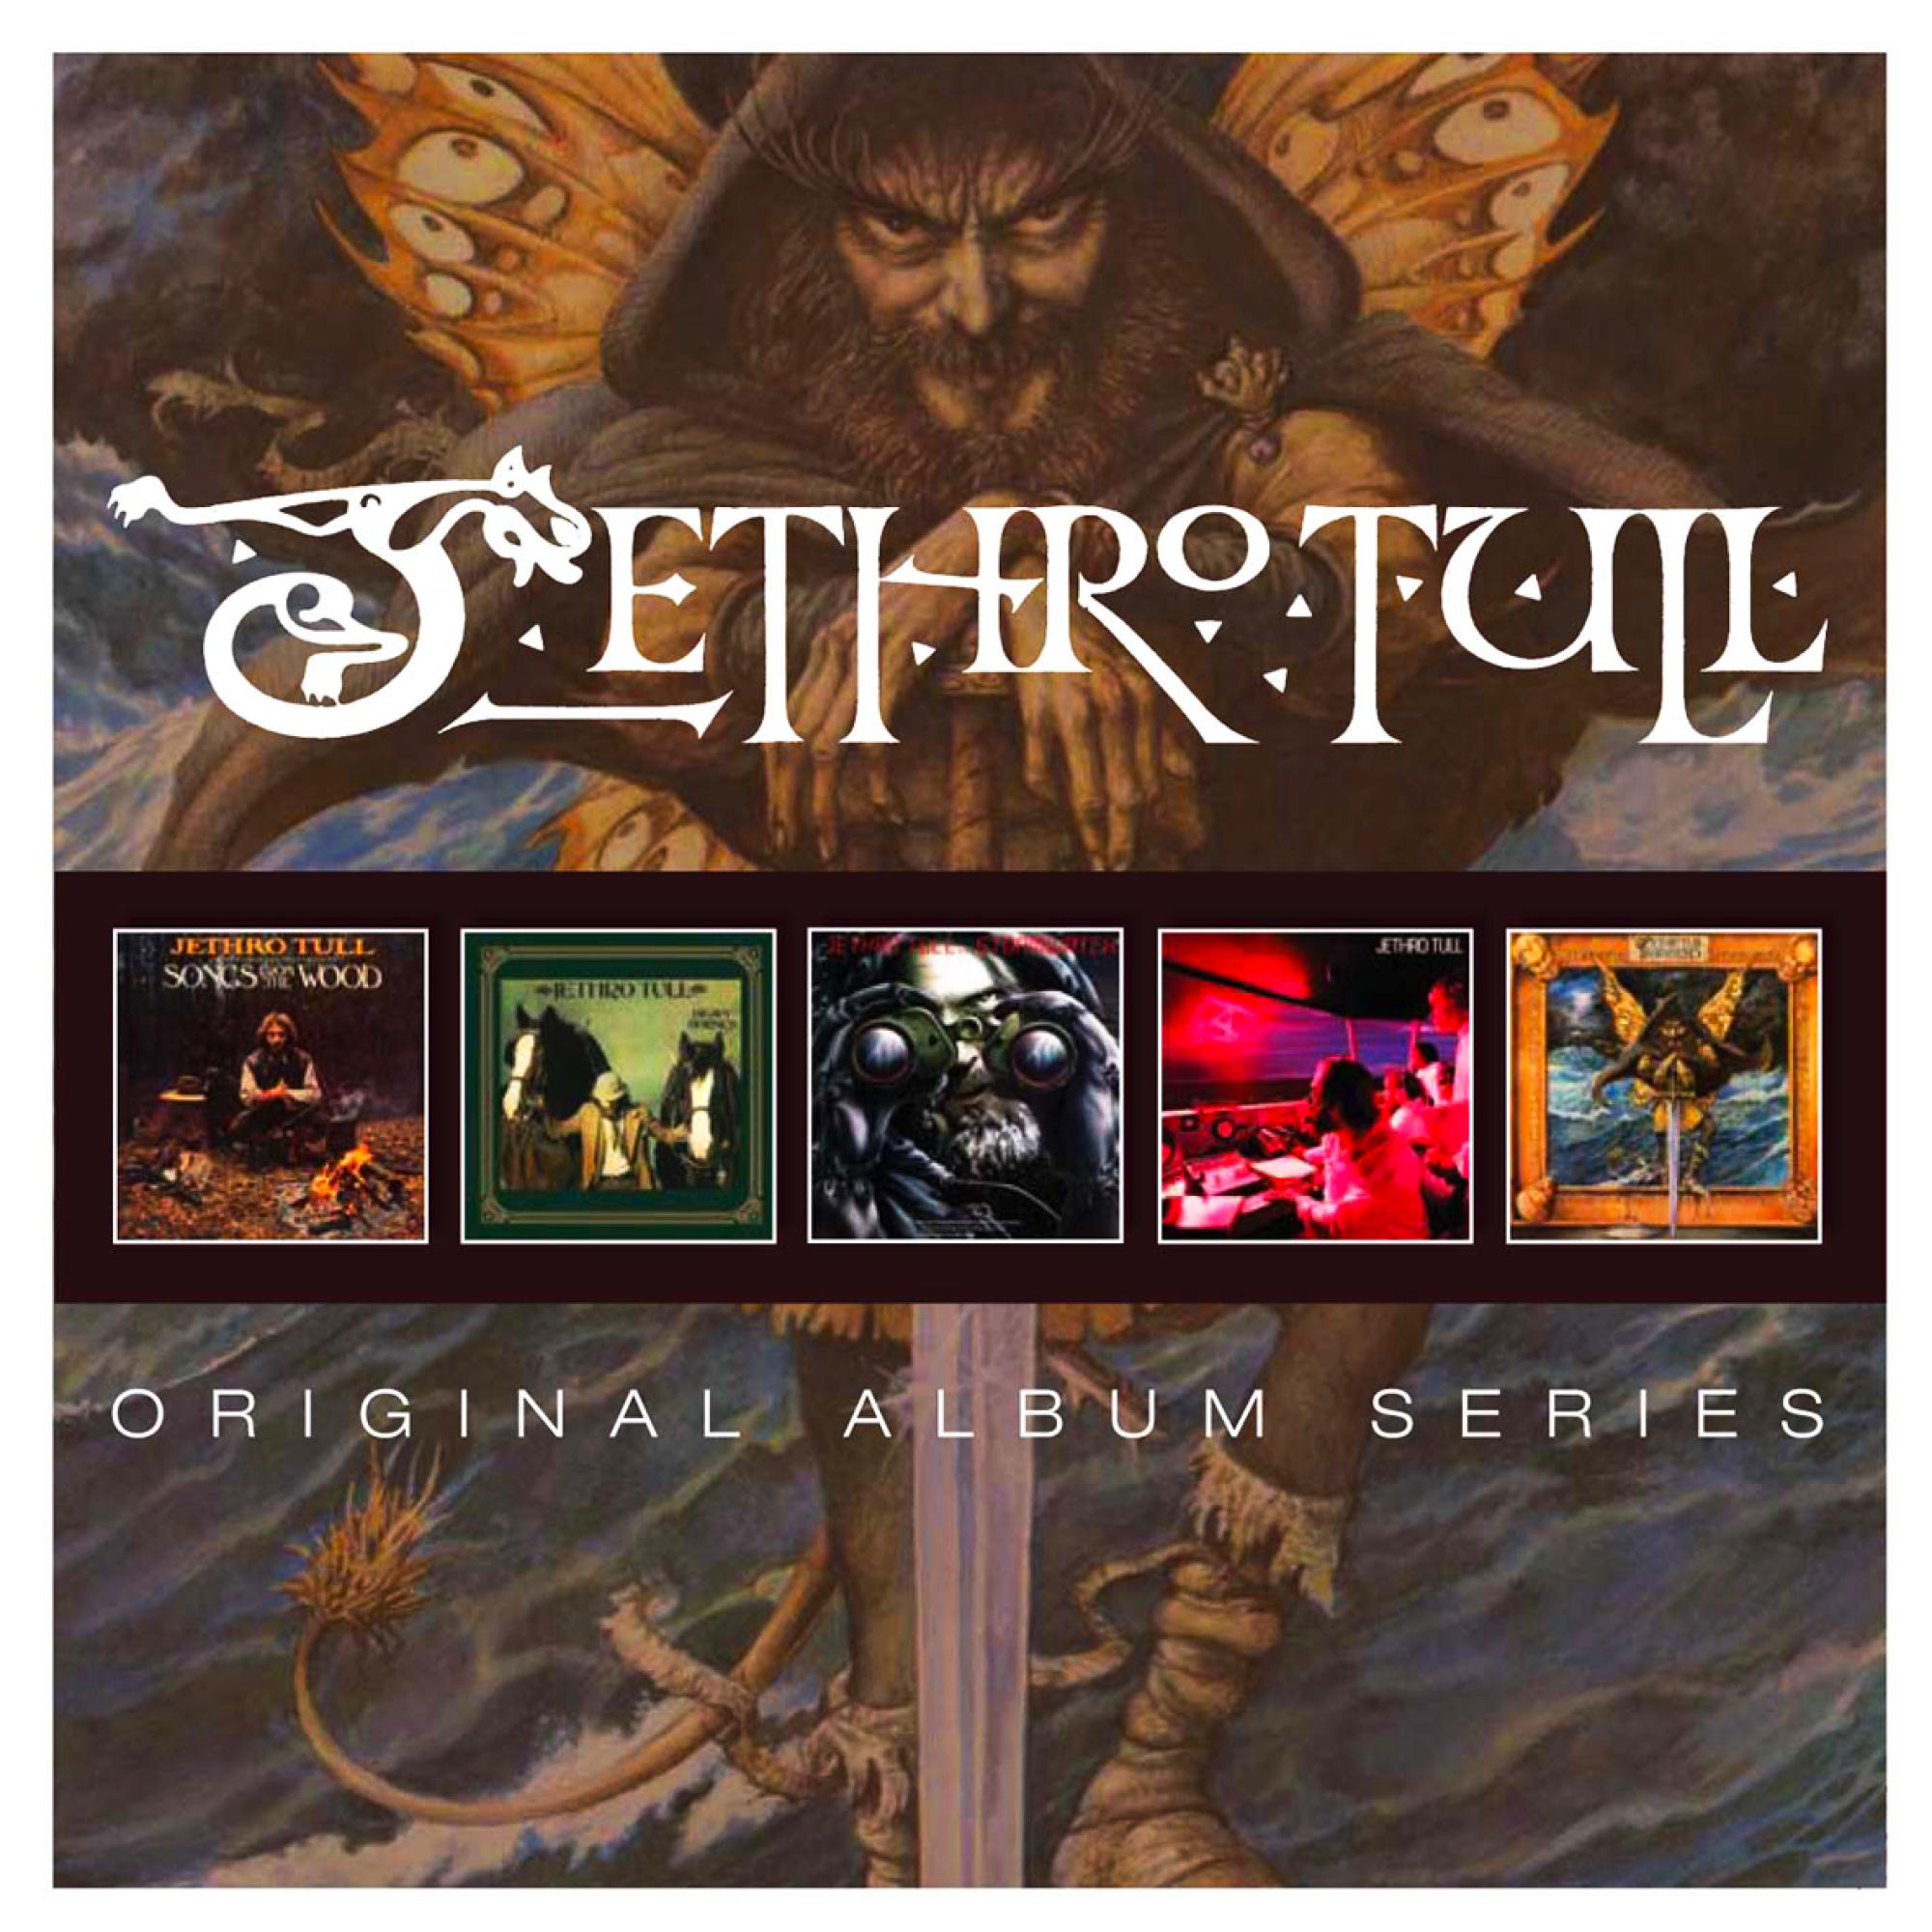 Album Series (CD) (5 Jethro - Cd - Original Box) Tull